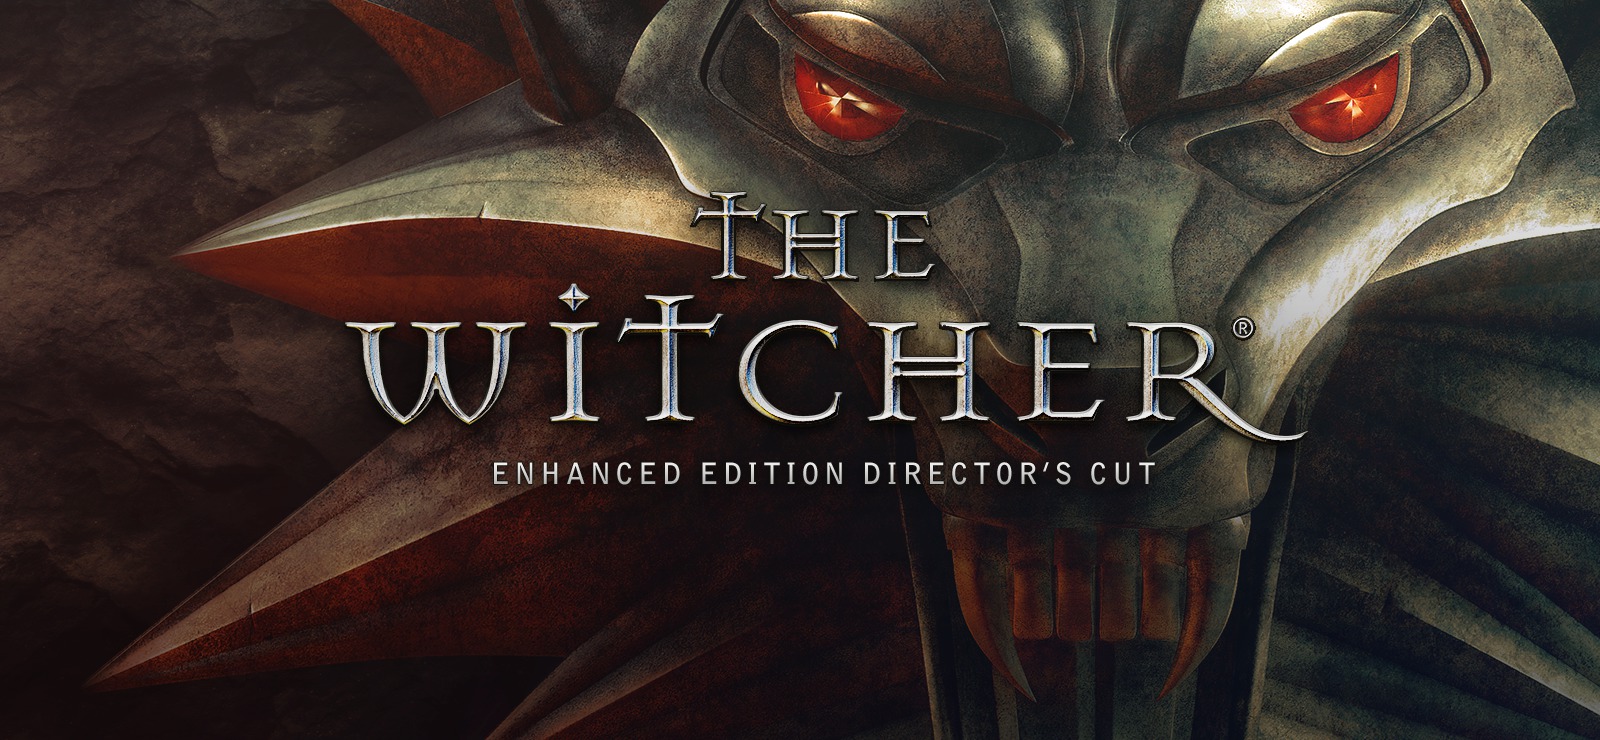 The Witcher 3 akan tiba di Nintendo Switch 15 Oktober mendatang